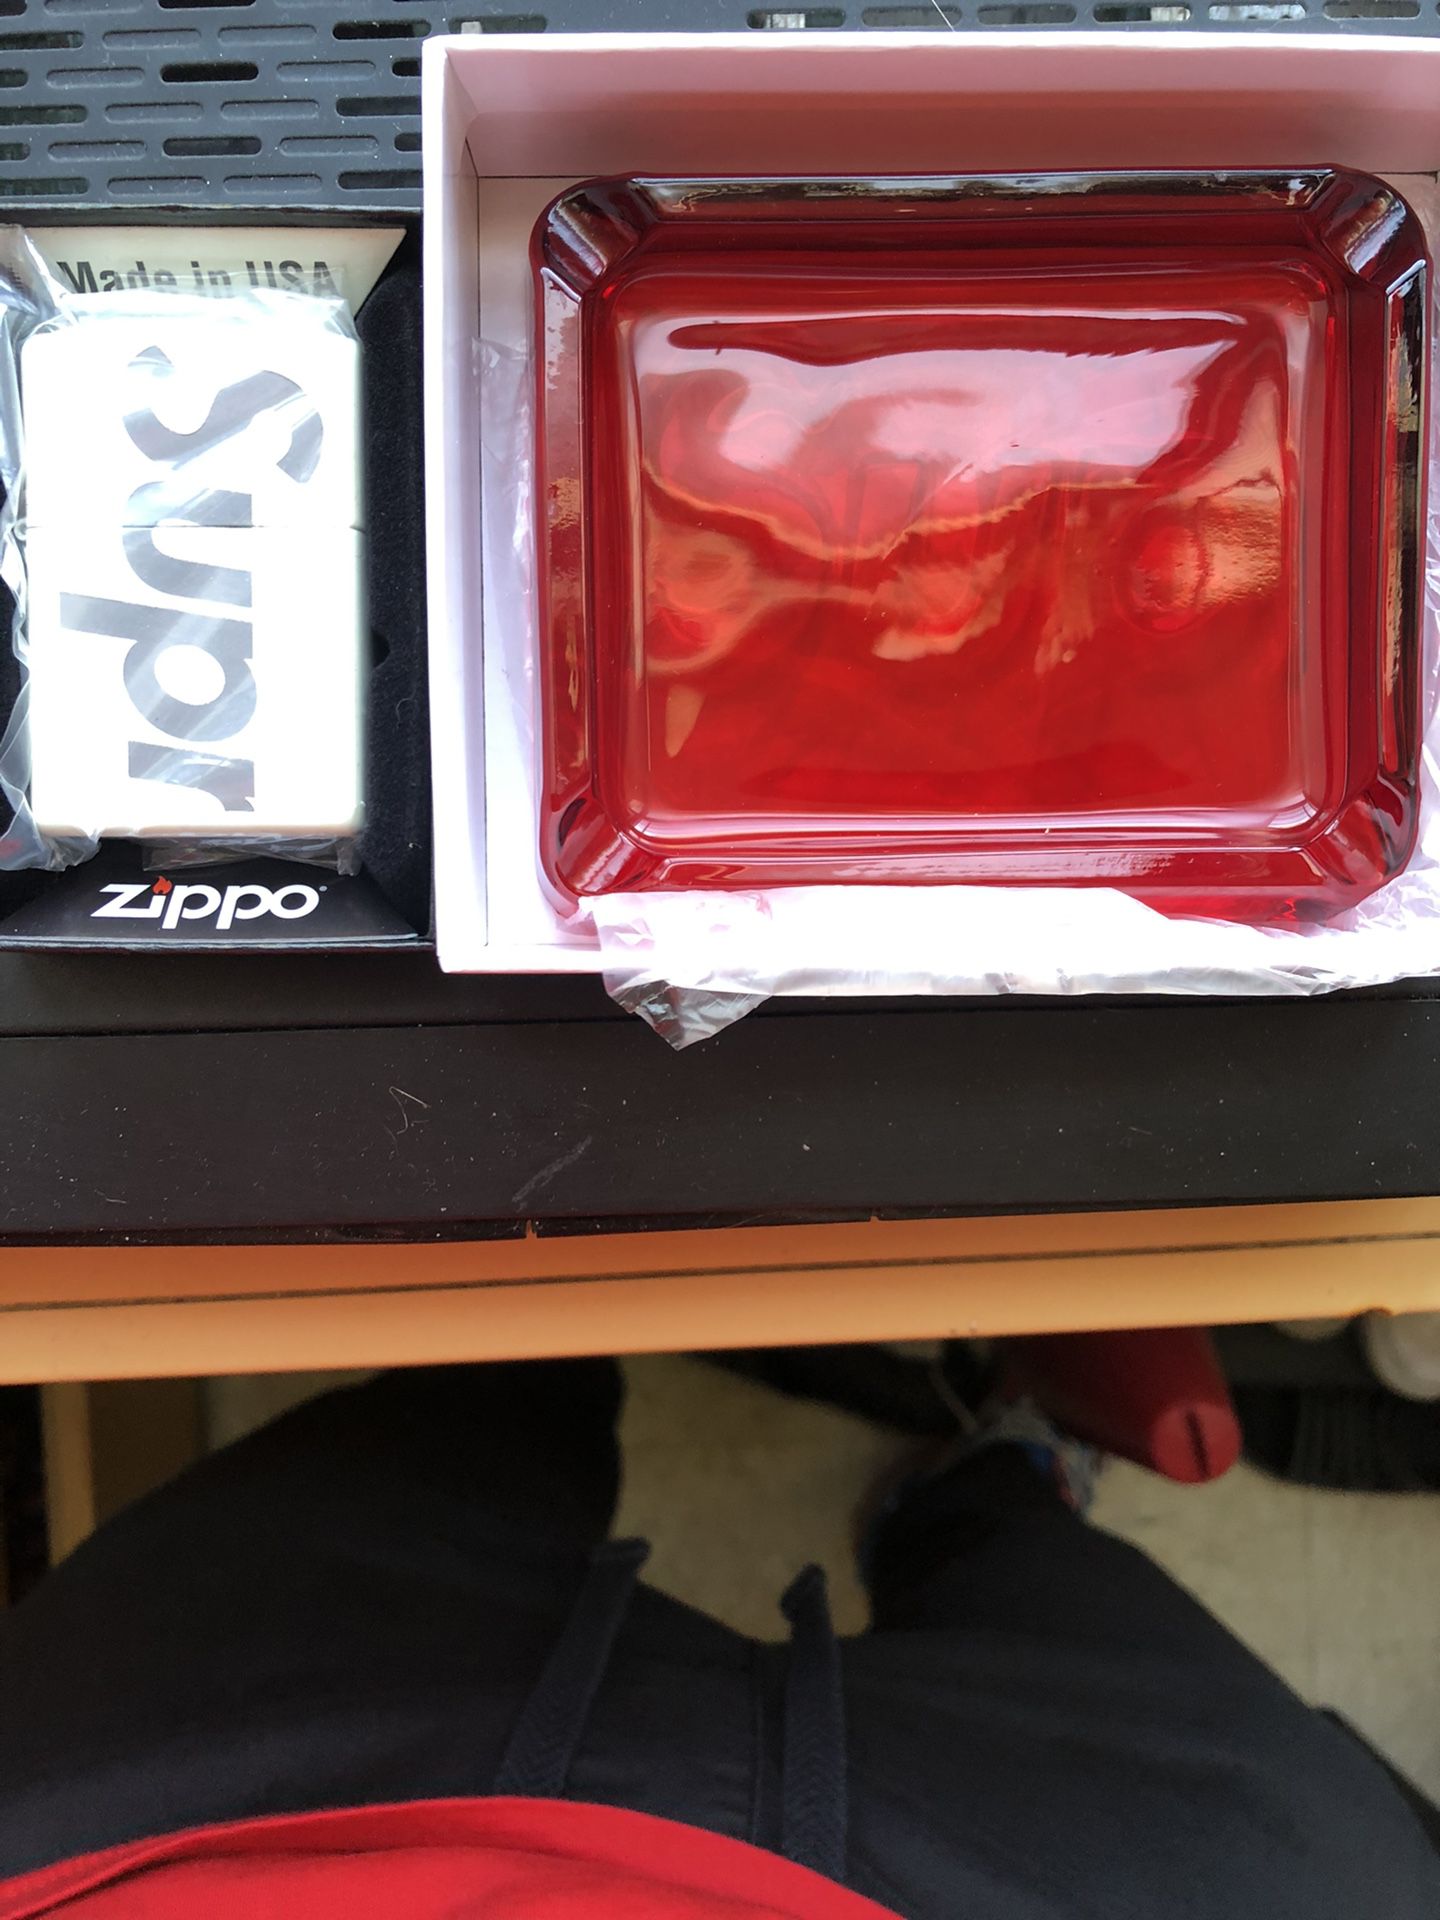 Glow-in-the-dark Supreme Zippo And Red Supreme Glass Ashtray